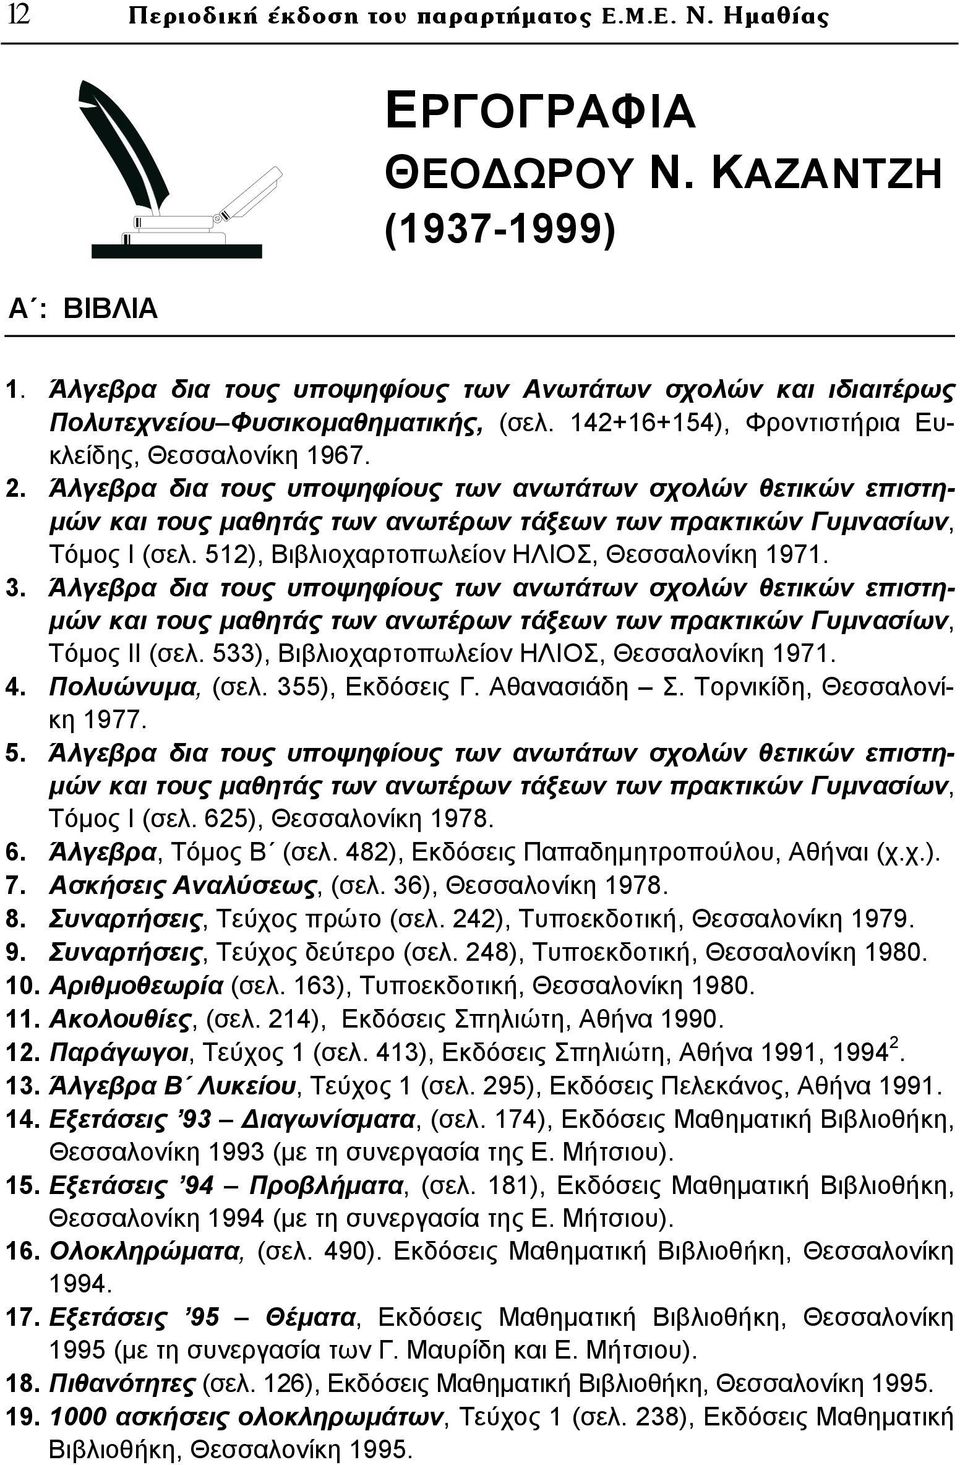 Άλγεβρα δια τους υποψηφίους των ανωτάτων σχολών θετικών επιστημών και τους μαθητάς των ανωτέρων τάξεων των πρακτικών Γυμνασίων, Τόμος Ι (σελ. 512), Βιβλιοχαρτοπωλείον ΗΛΙΟΣ, Θεσσαλονίκη 1971. 3.